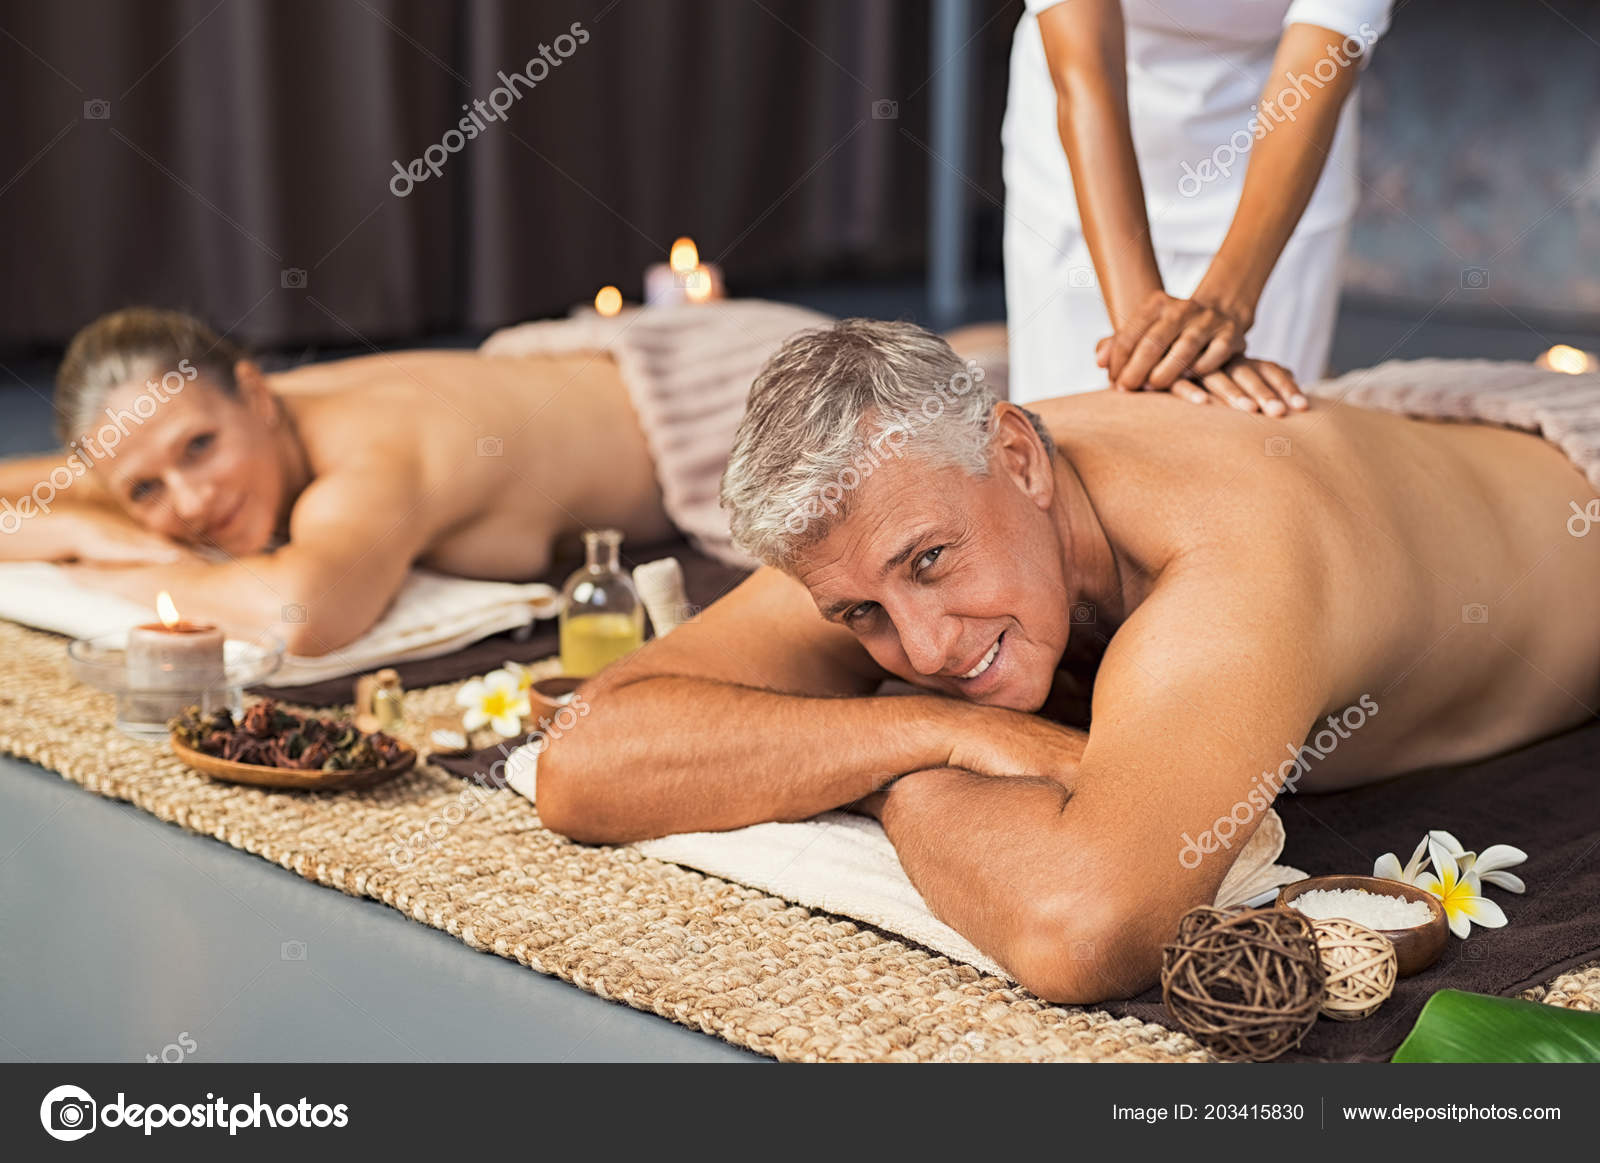 Mature women massage-nude gallery